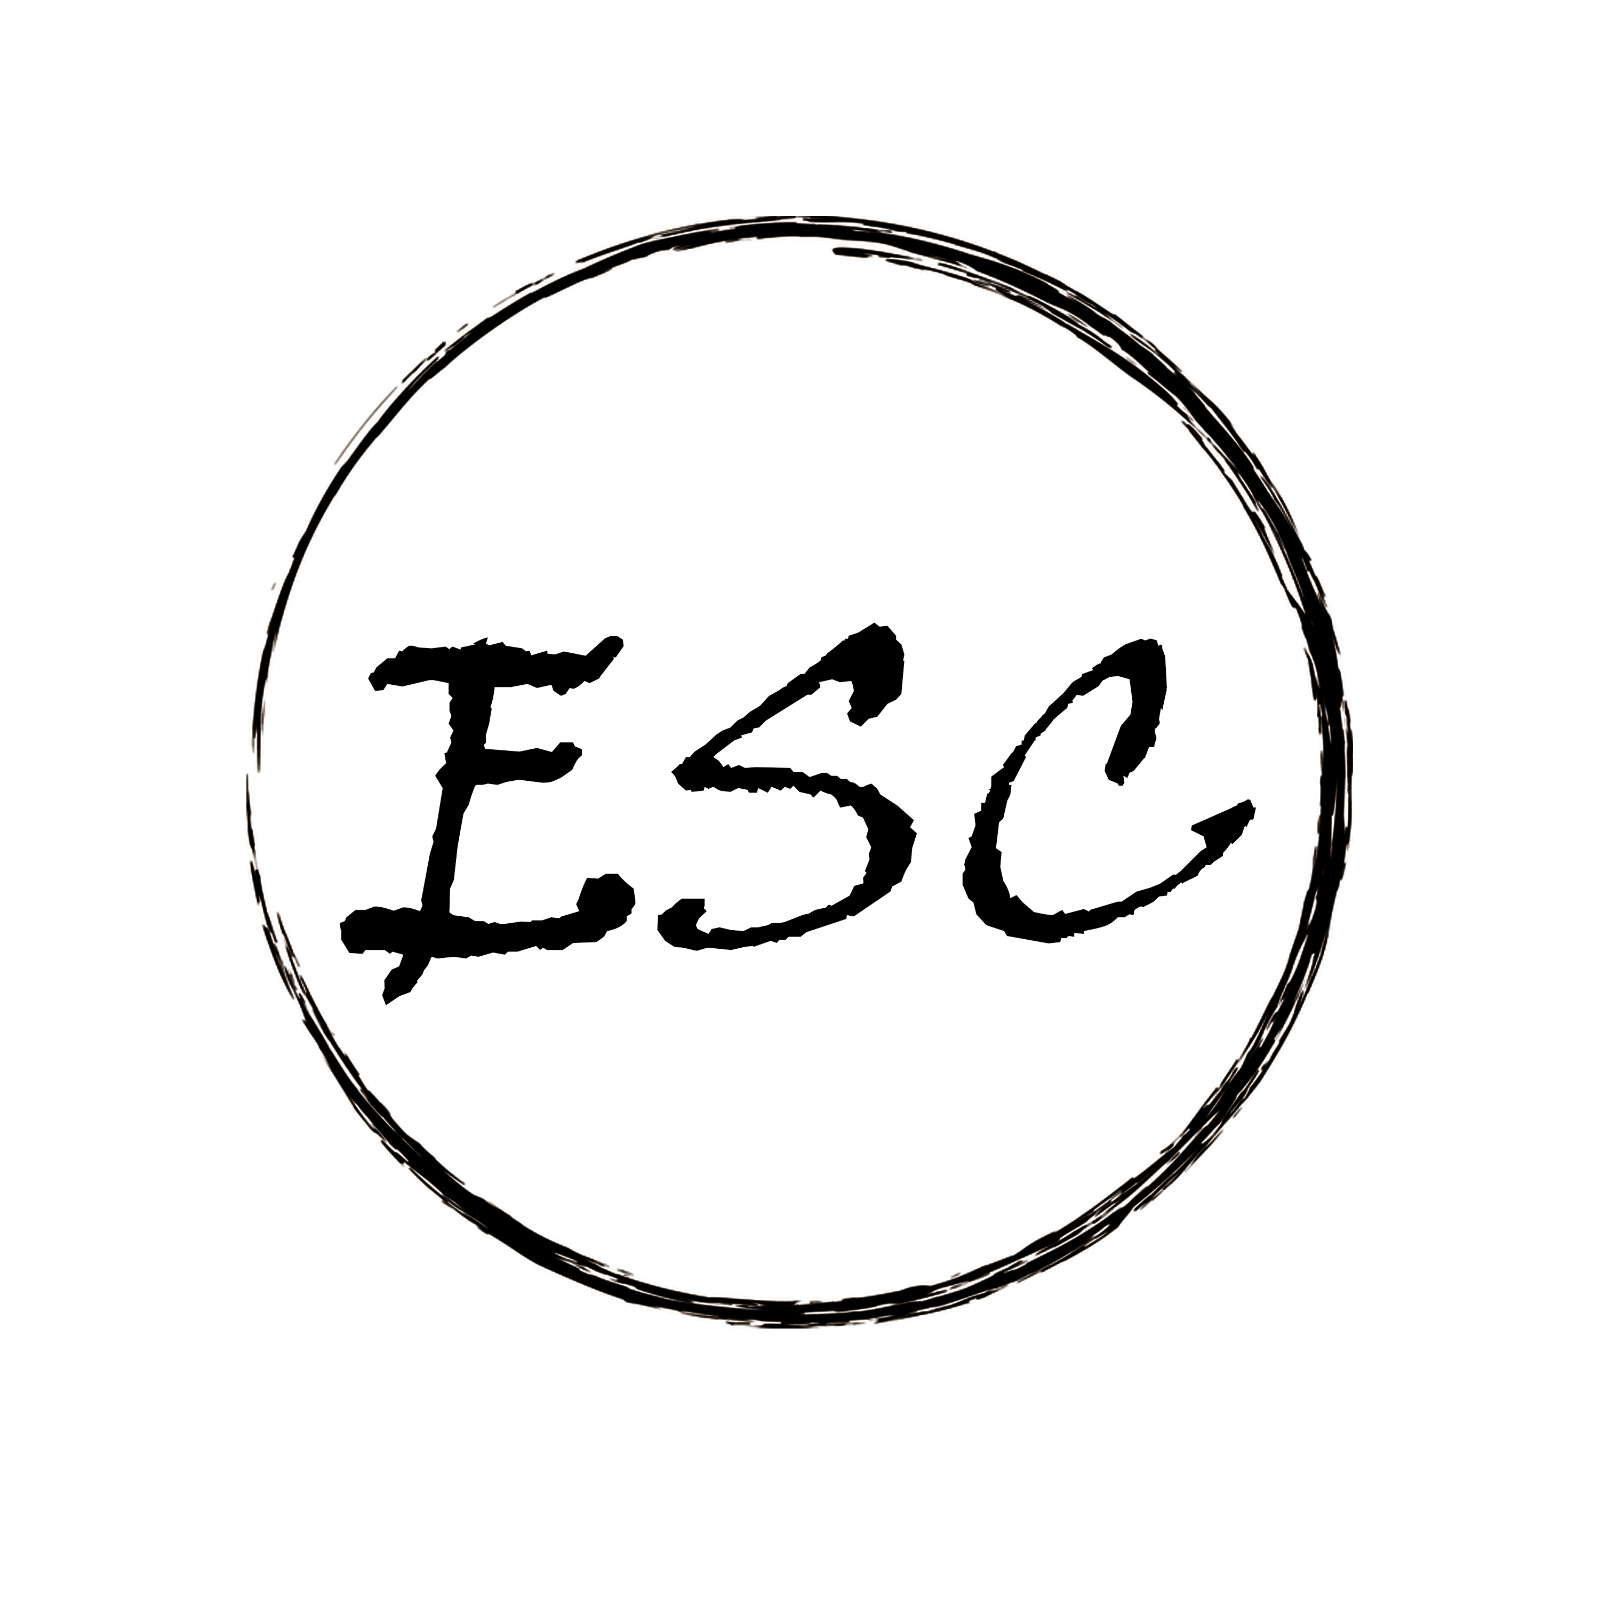 ESC-AC